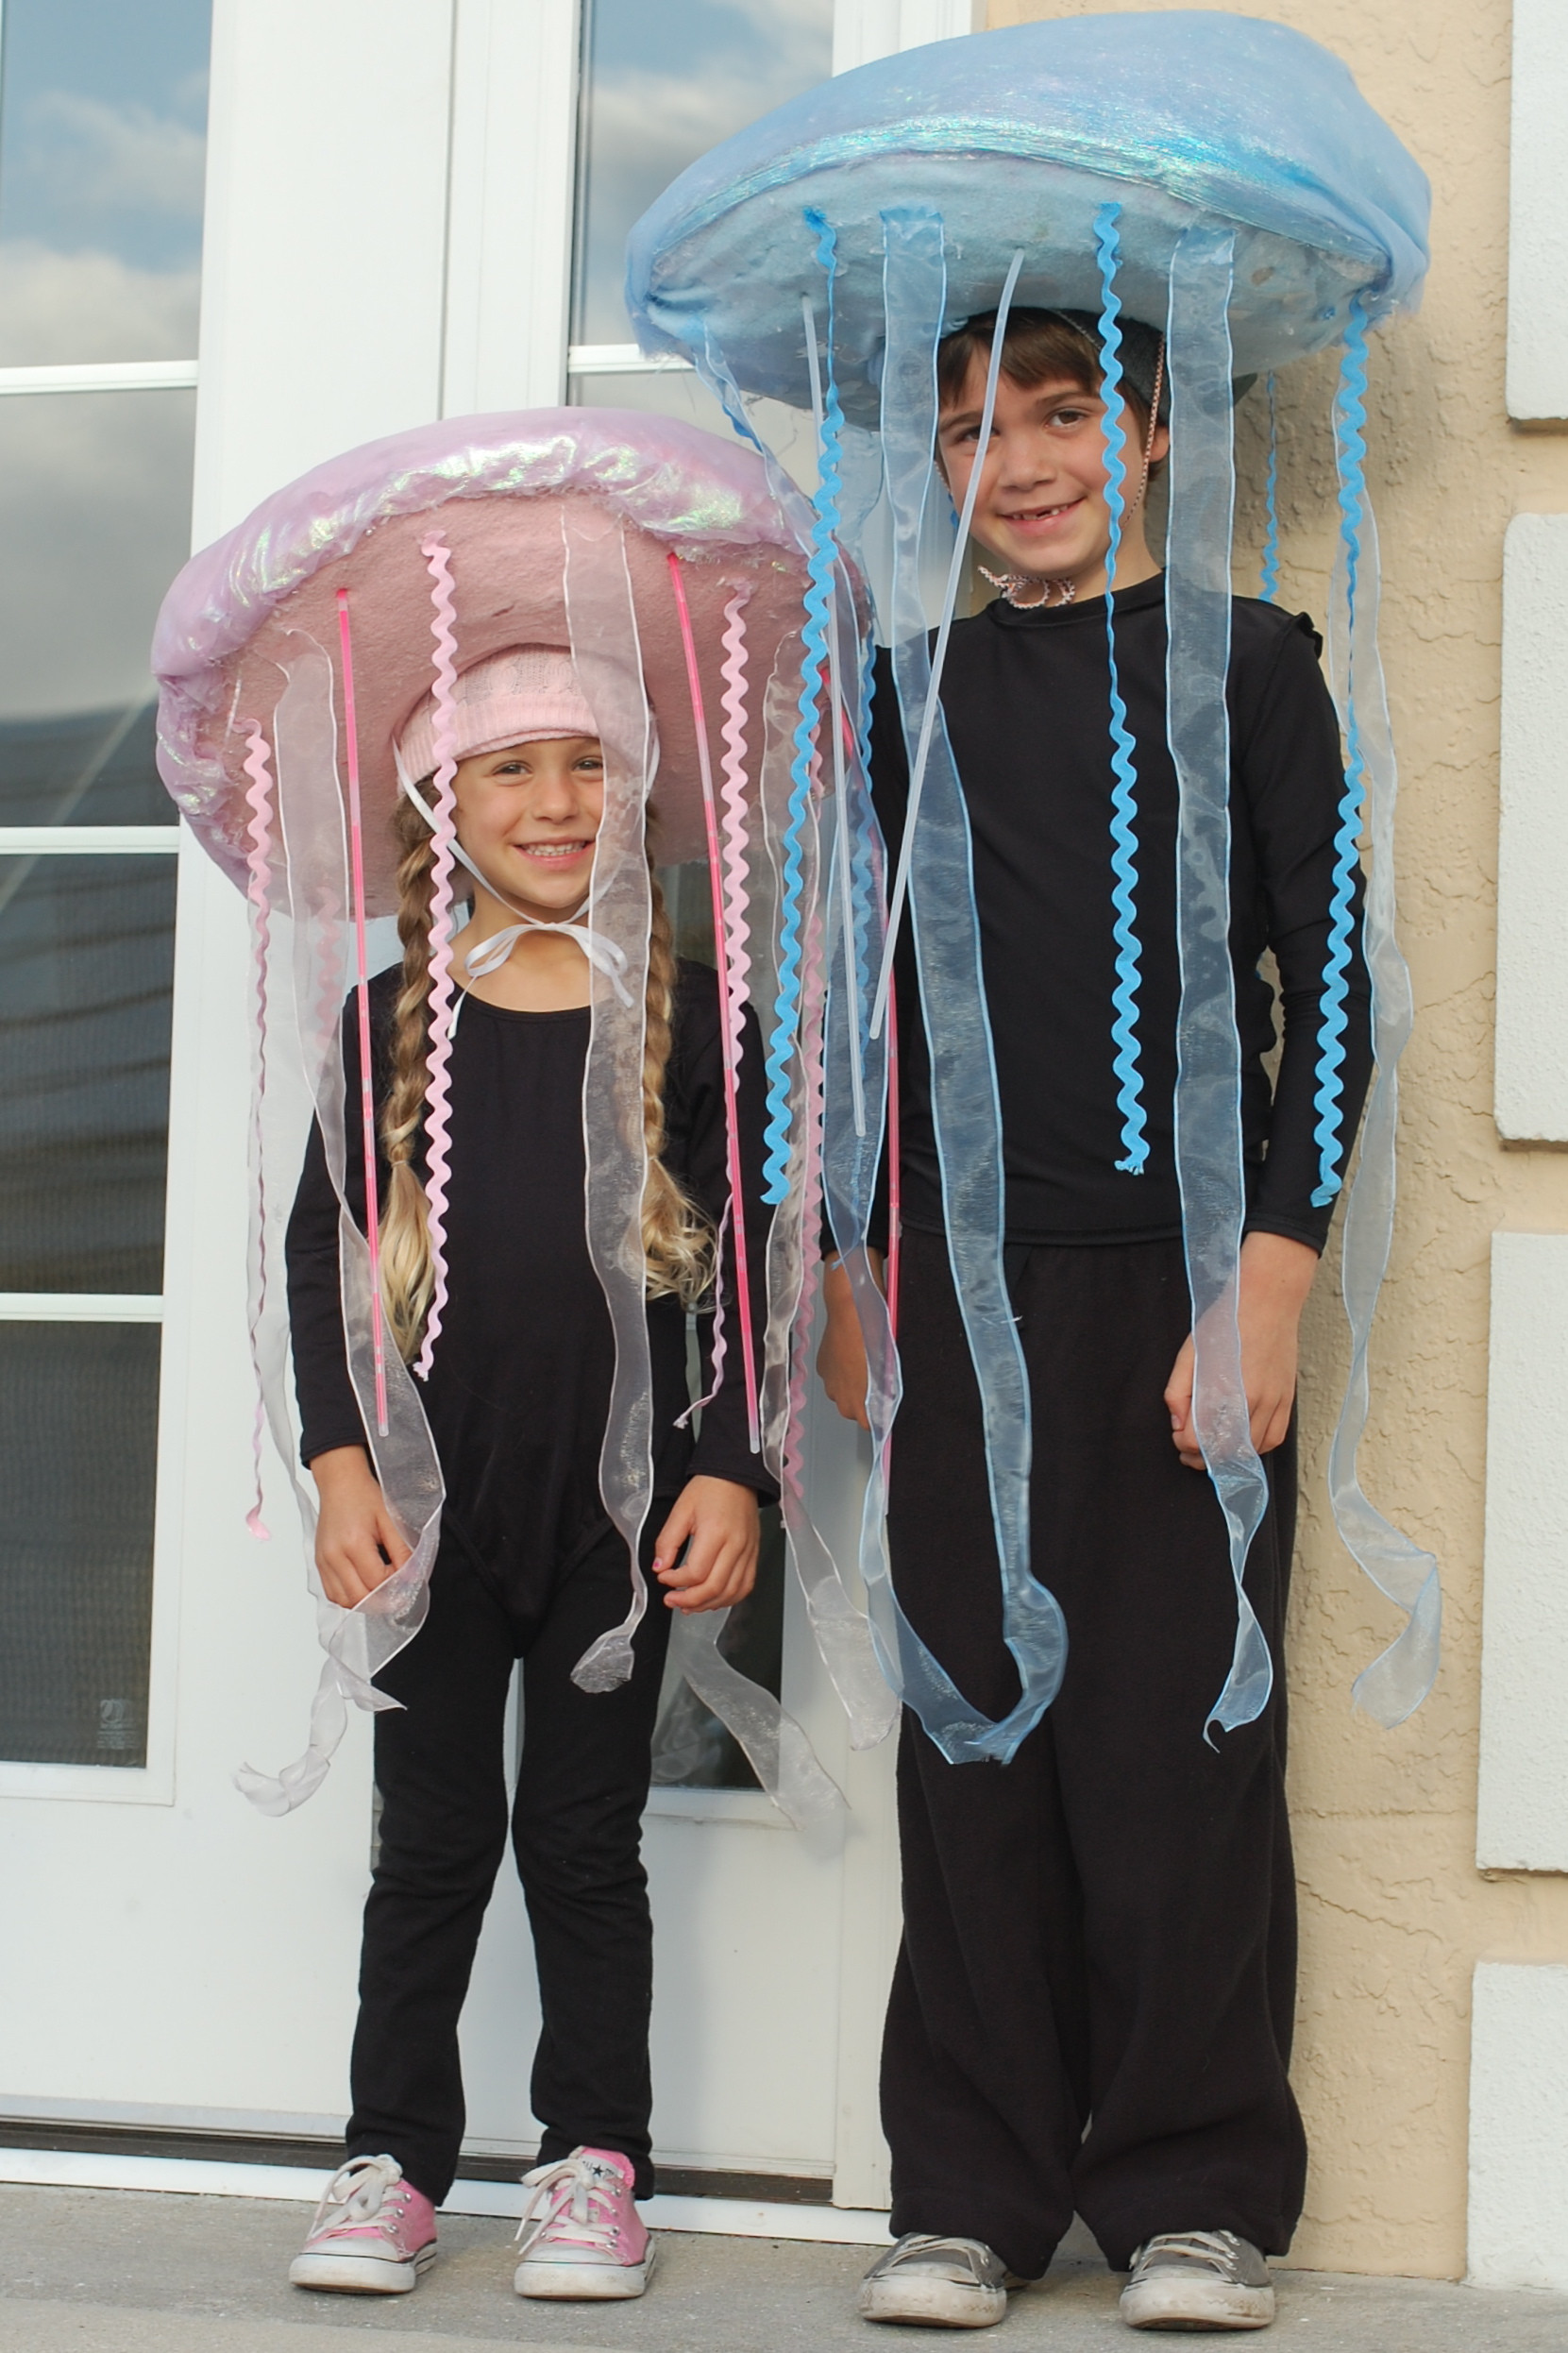 DIY Jellyfish Costumes
 Glow in the Dark Jellyfish Costume Tutorial